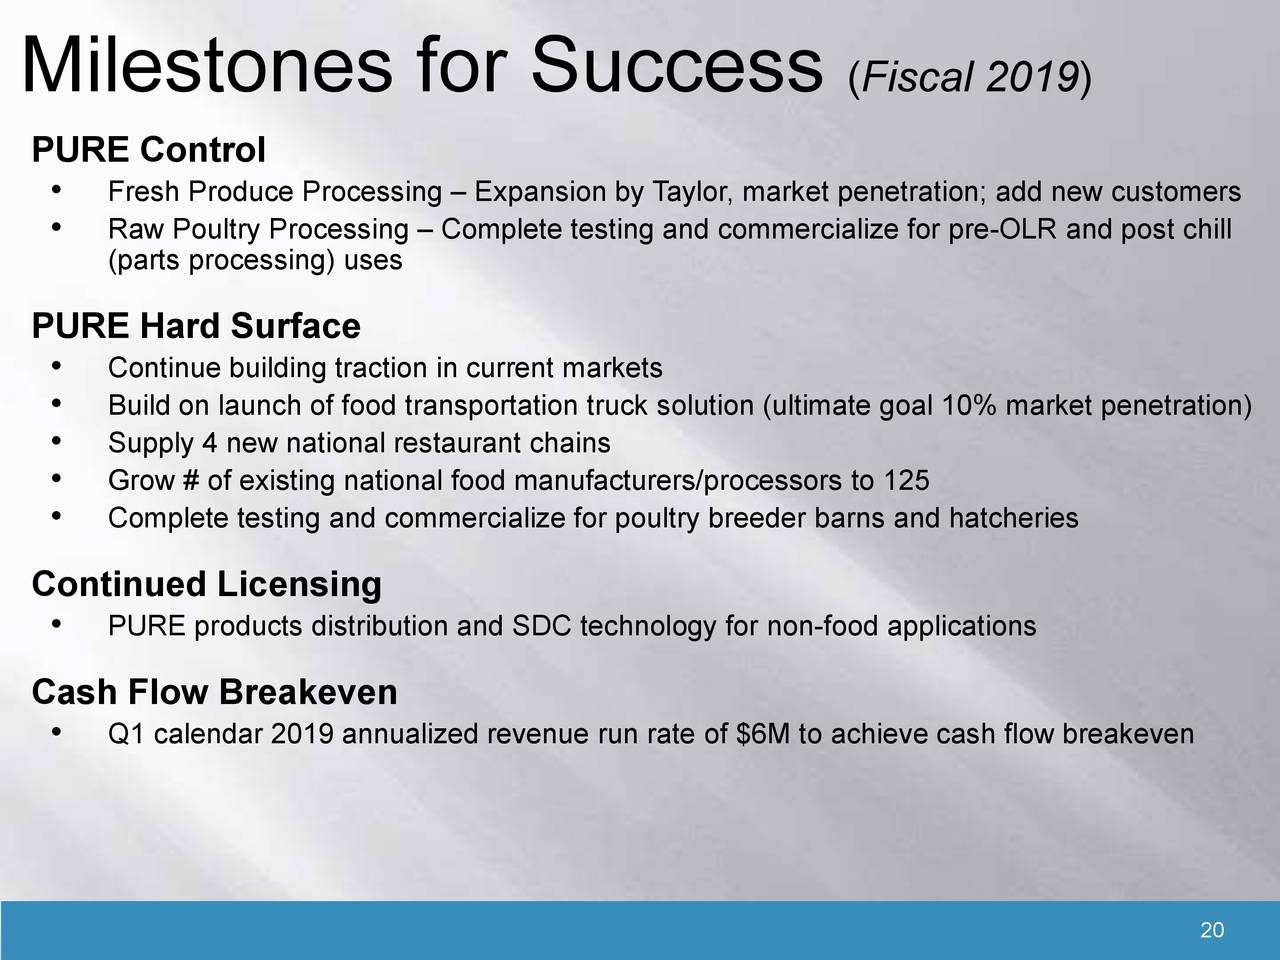 Milestones for Success                                     (Fiscal 2019)